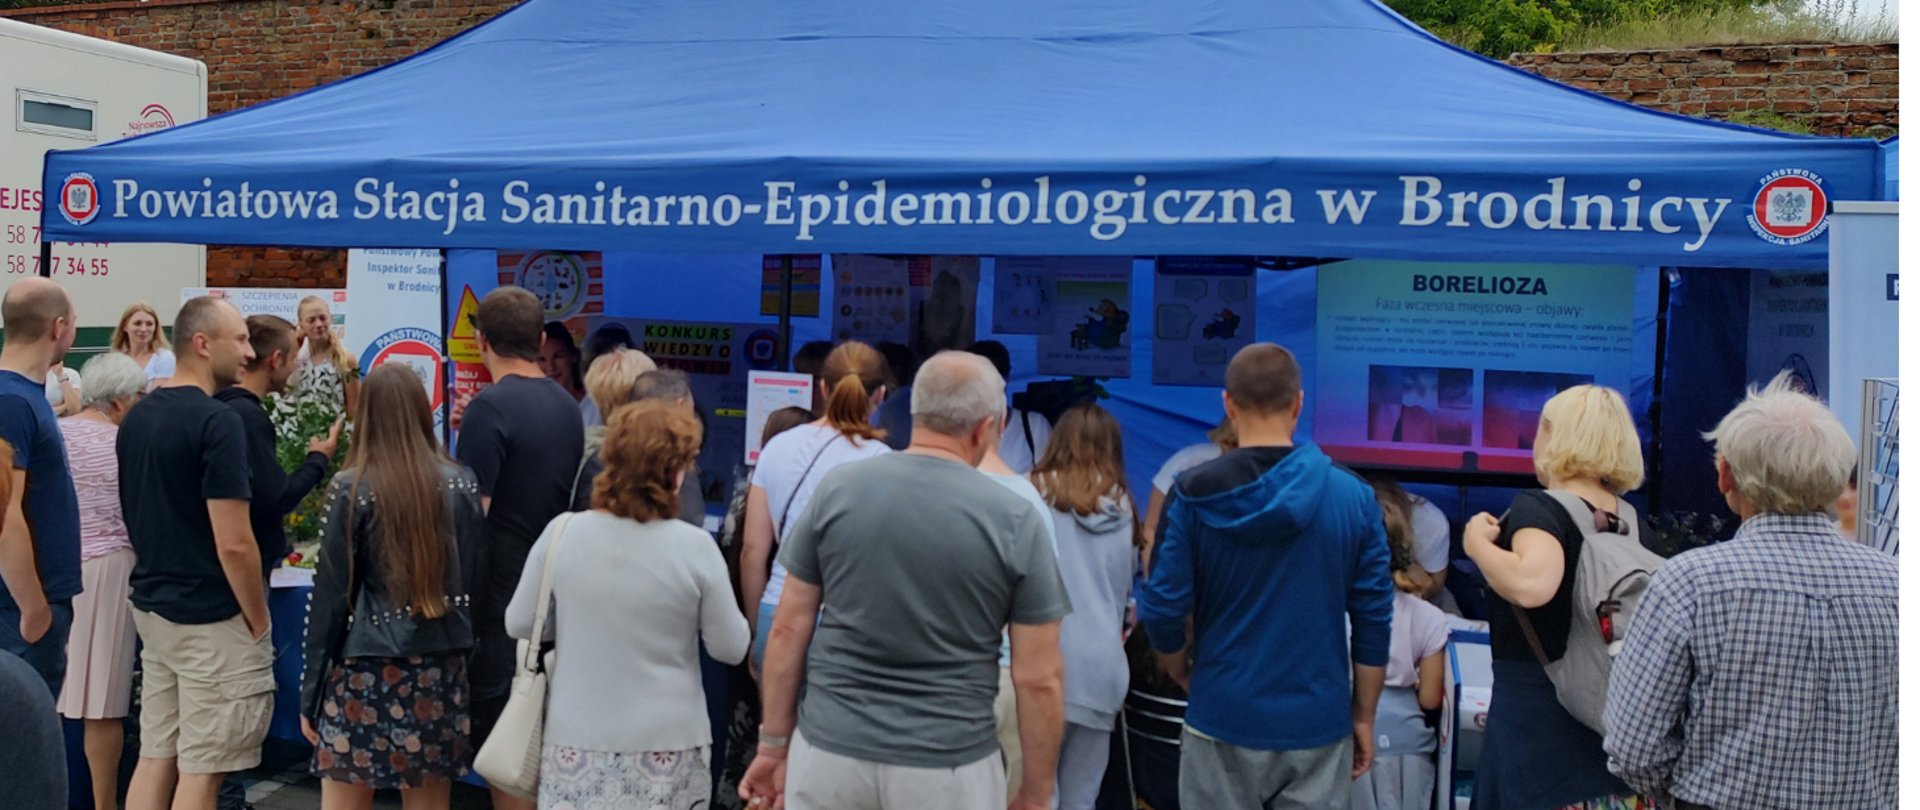 Grupa ludzi przed namiotem Powiatowej Stacji Sanitarno-Epidemiologicznej w Brodnicy podczas XV Międzynarodowego Jarmarku z królewną Anną. 